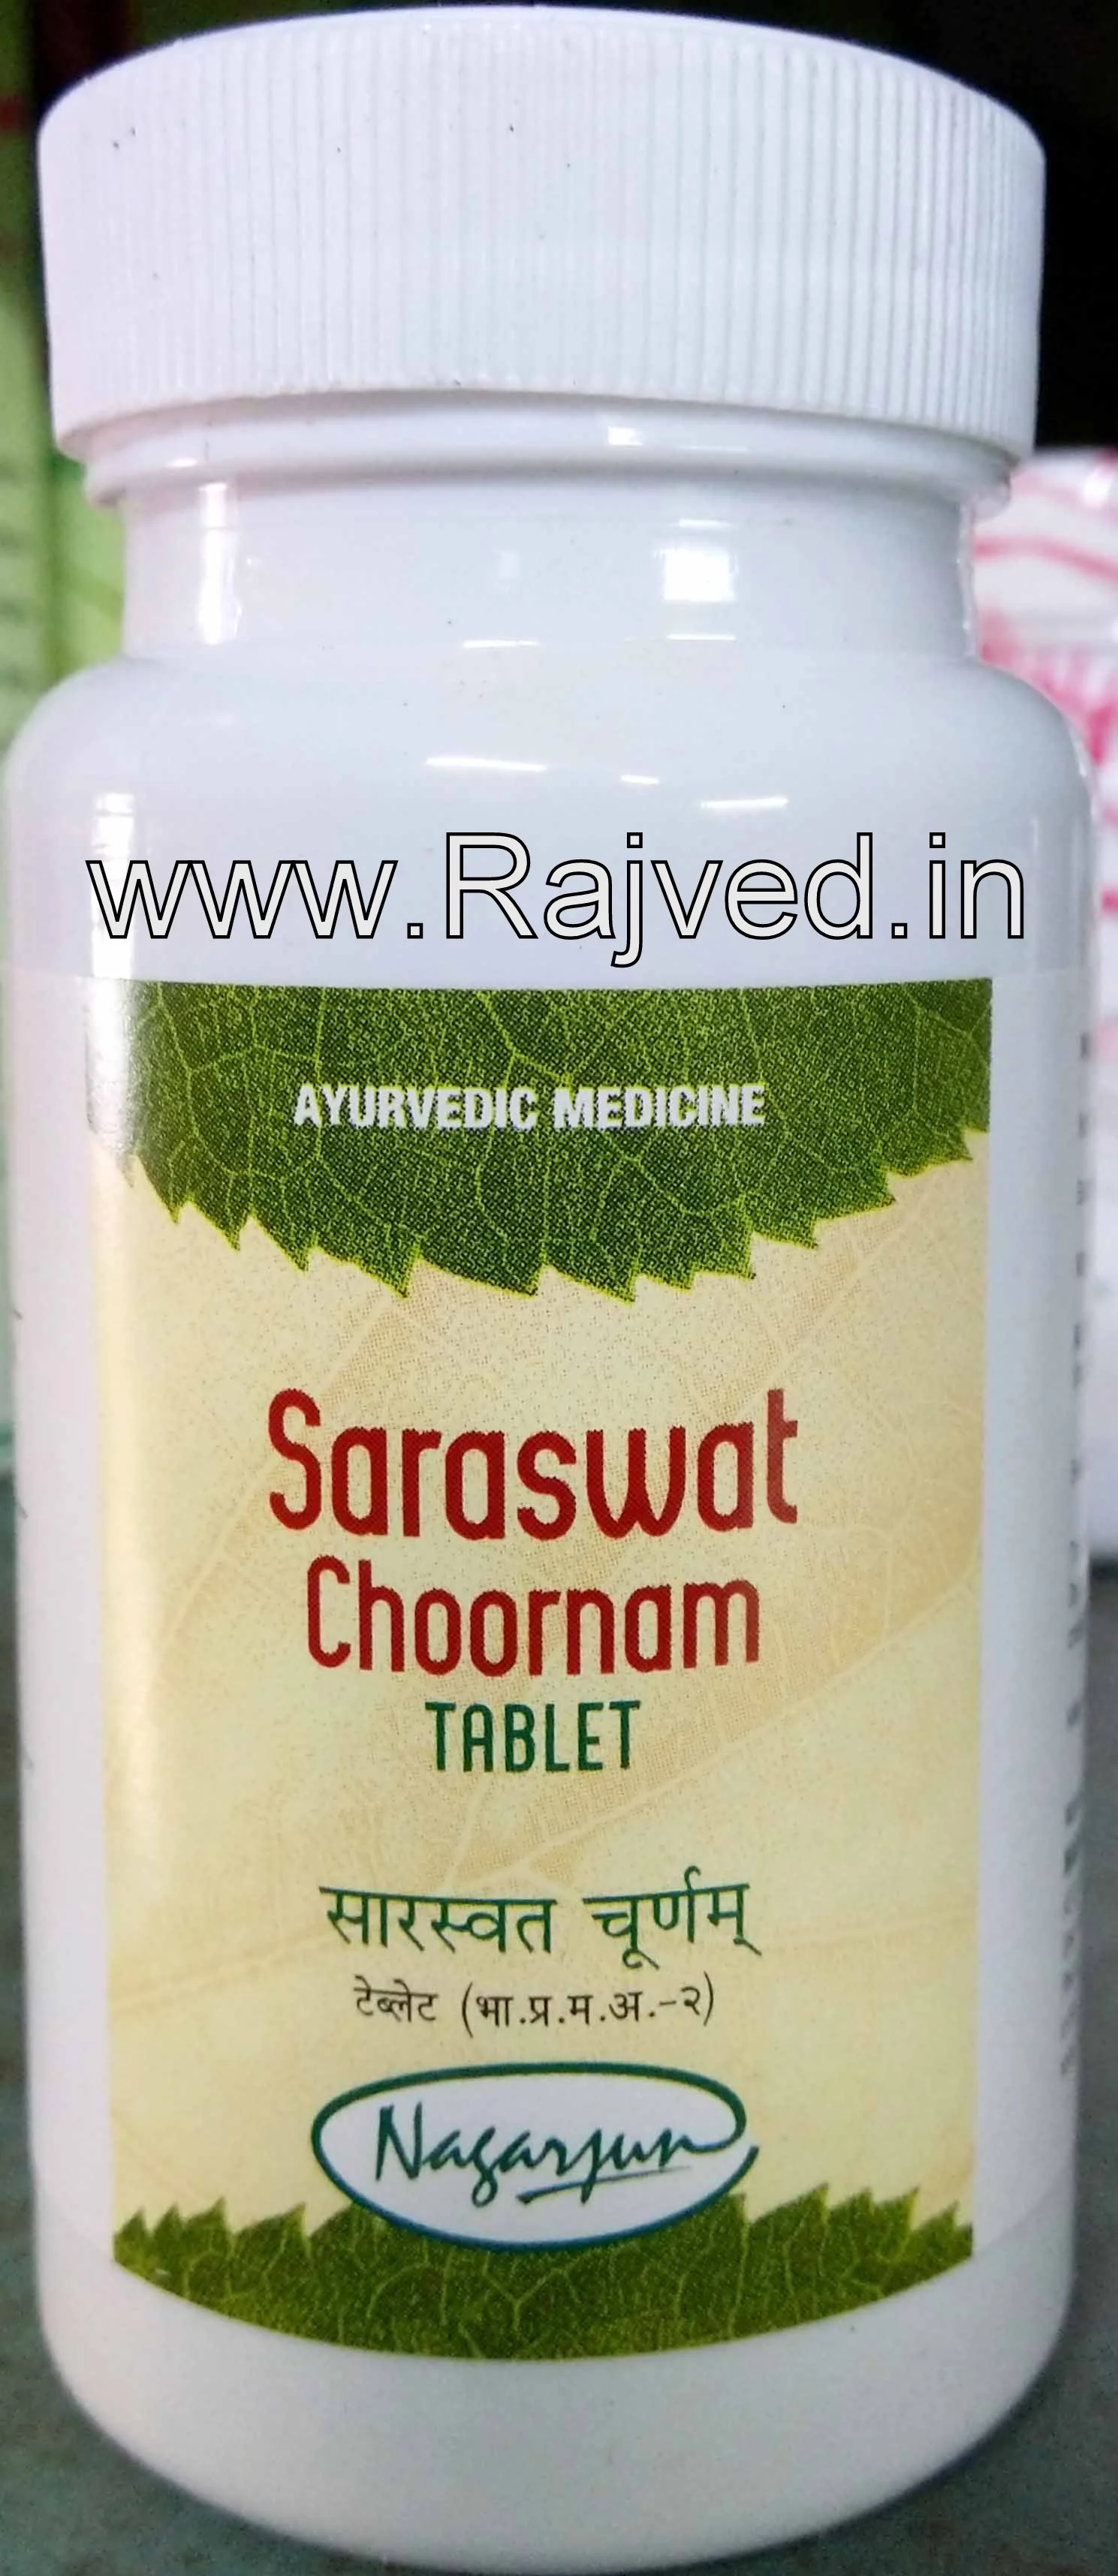 saraswat choornam tablet 500 gm upto 20% off free shipping nagarjun pharma gujarat